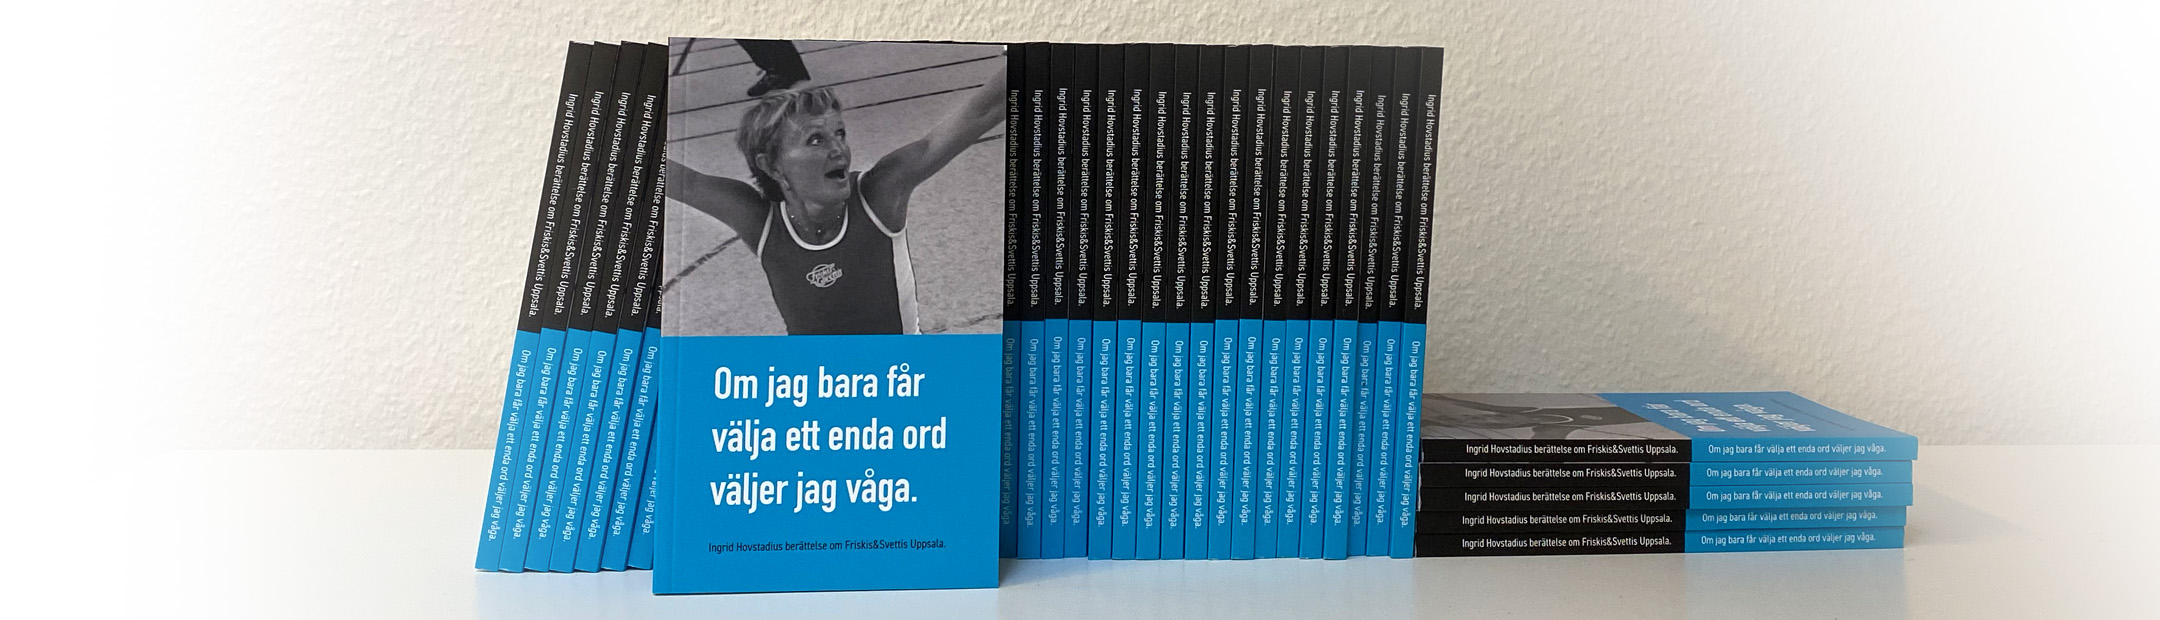 Ingrid Hovstadius berättelse om Friskis&Svettis Uppsala